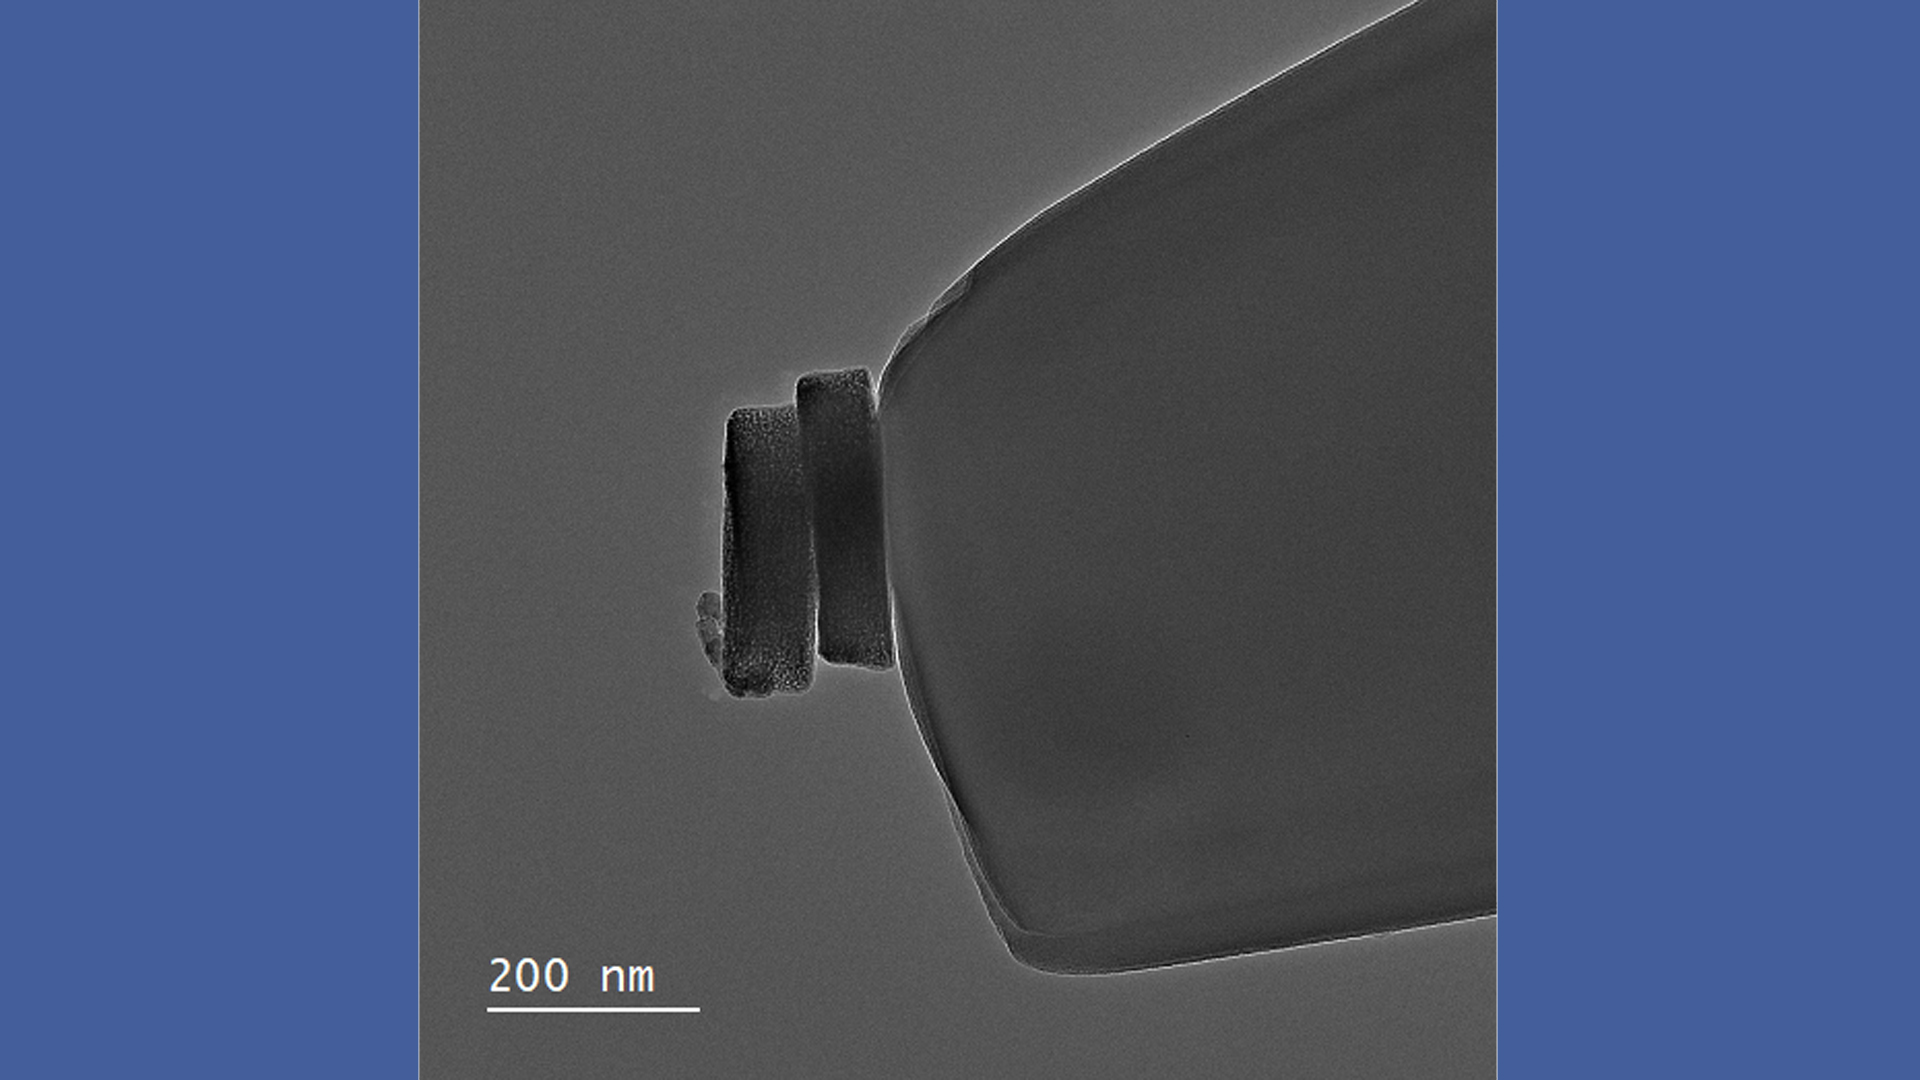 Elektronenmikroskopisches Bild von zwei winzigen Partikeln